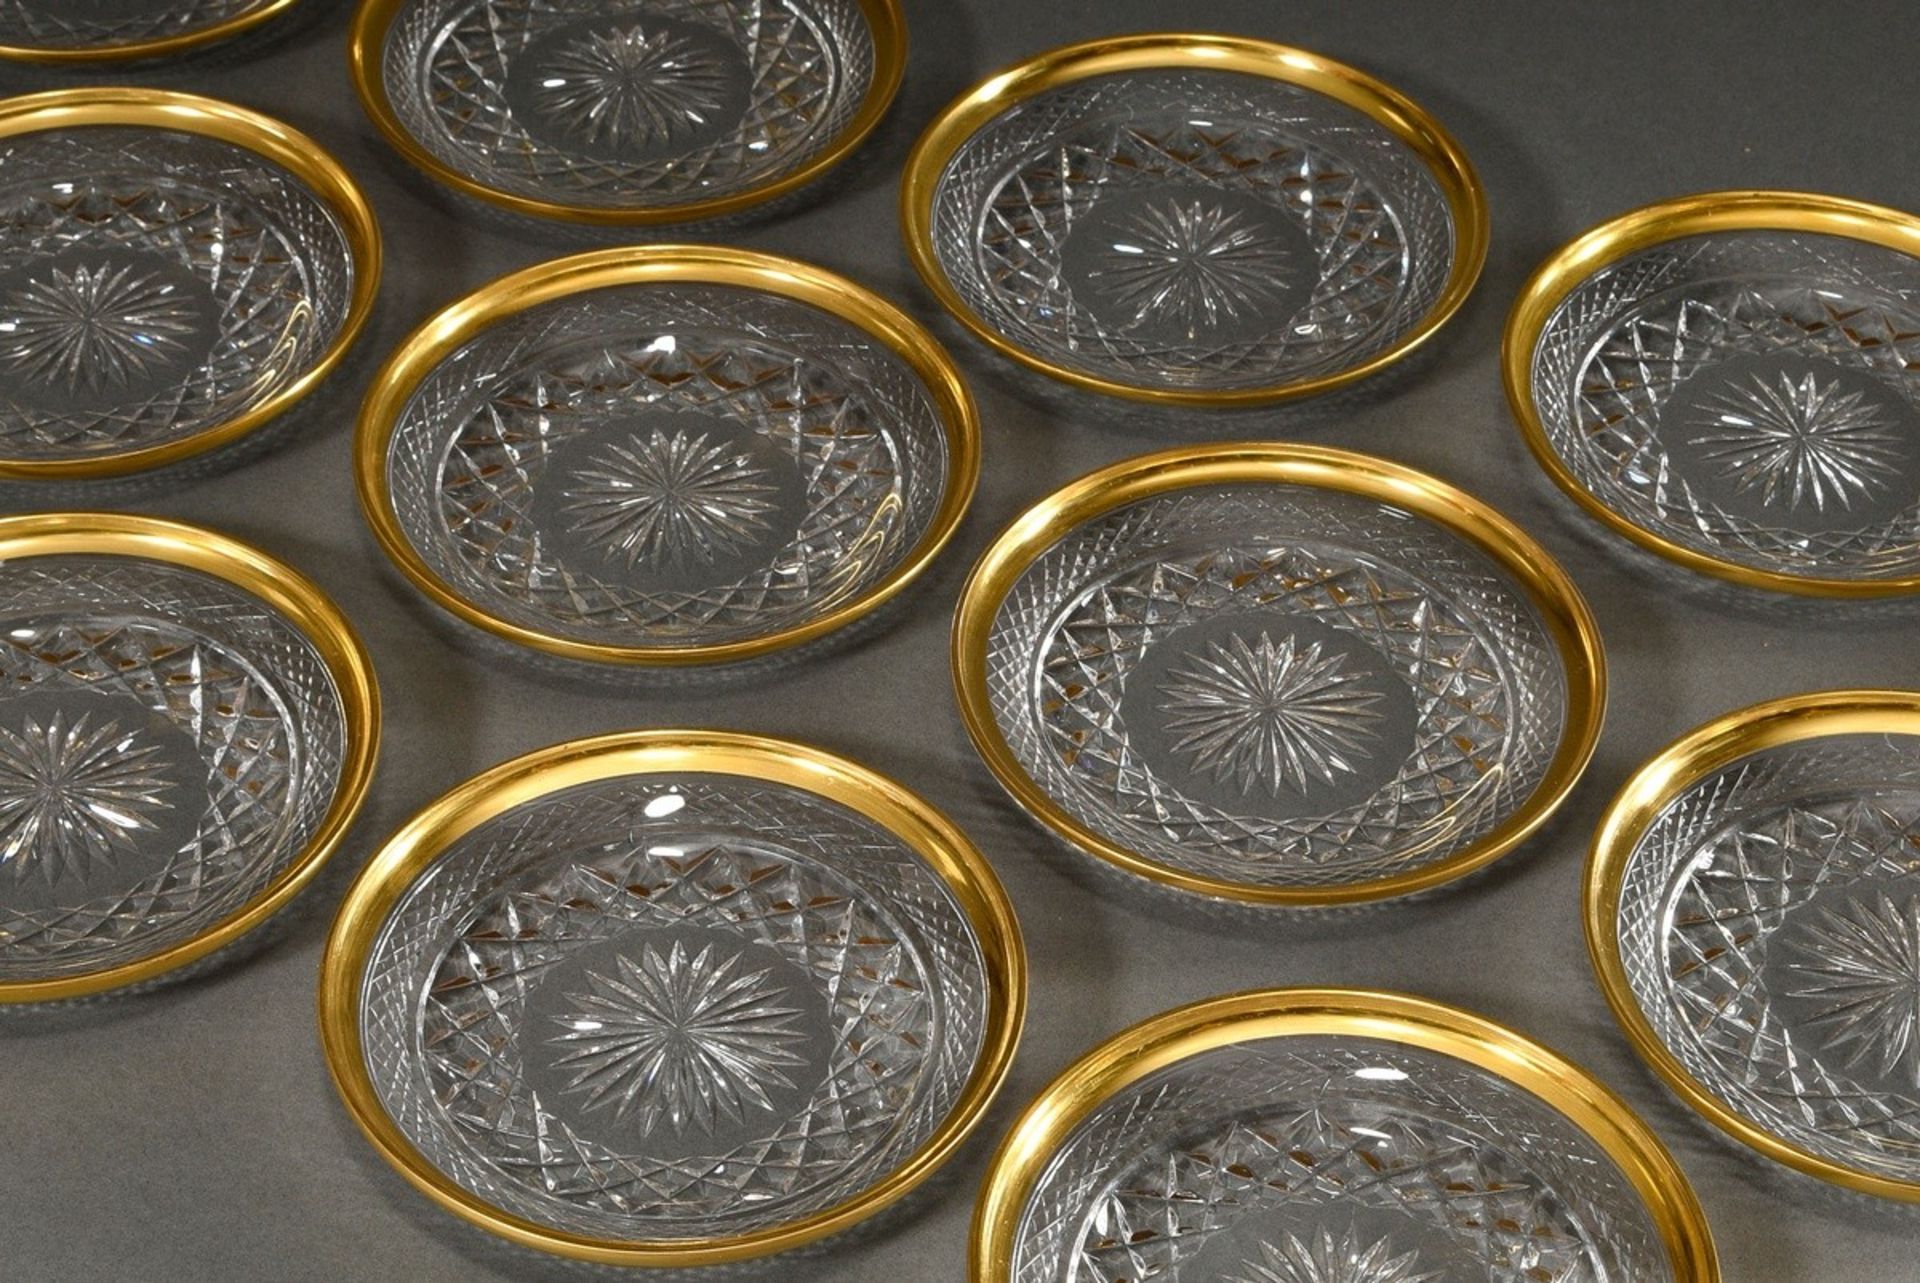 12 Kristall Dessertteller mit vergoldetem Rand und dekorativem Schliff, Ø 15,5cm, minimal berieben - Bild 4 aus 4